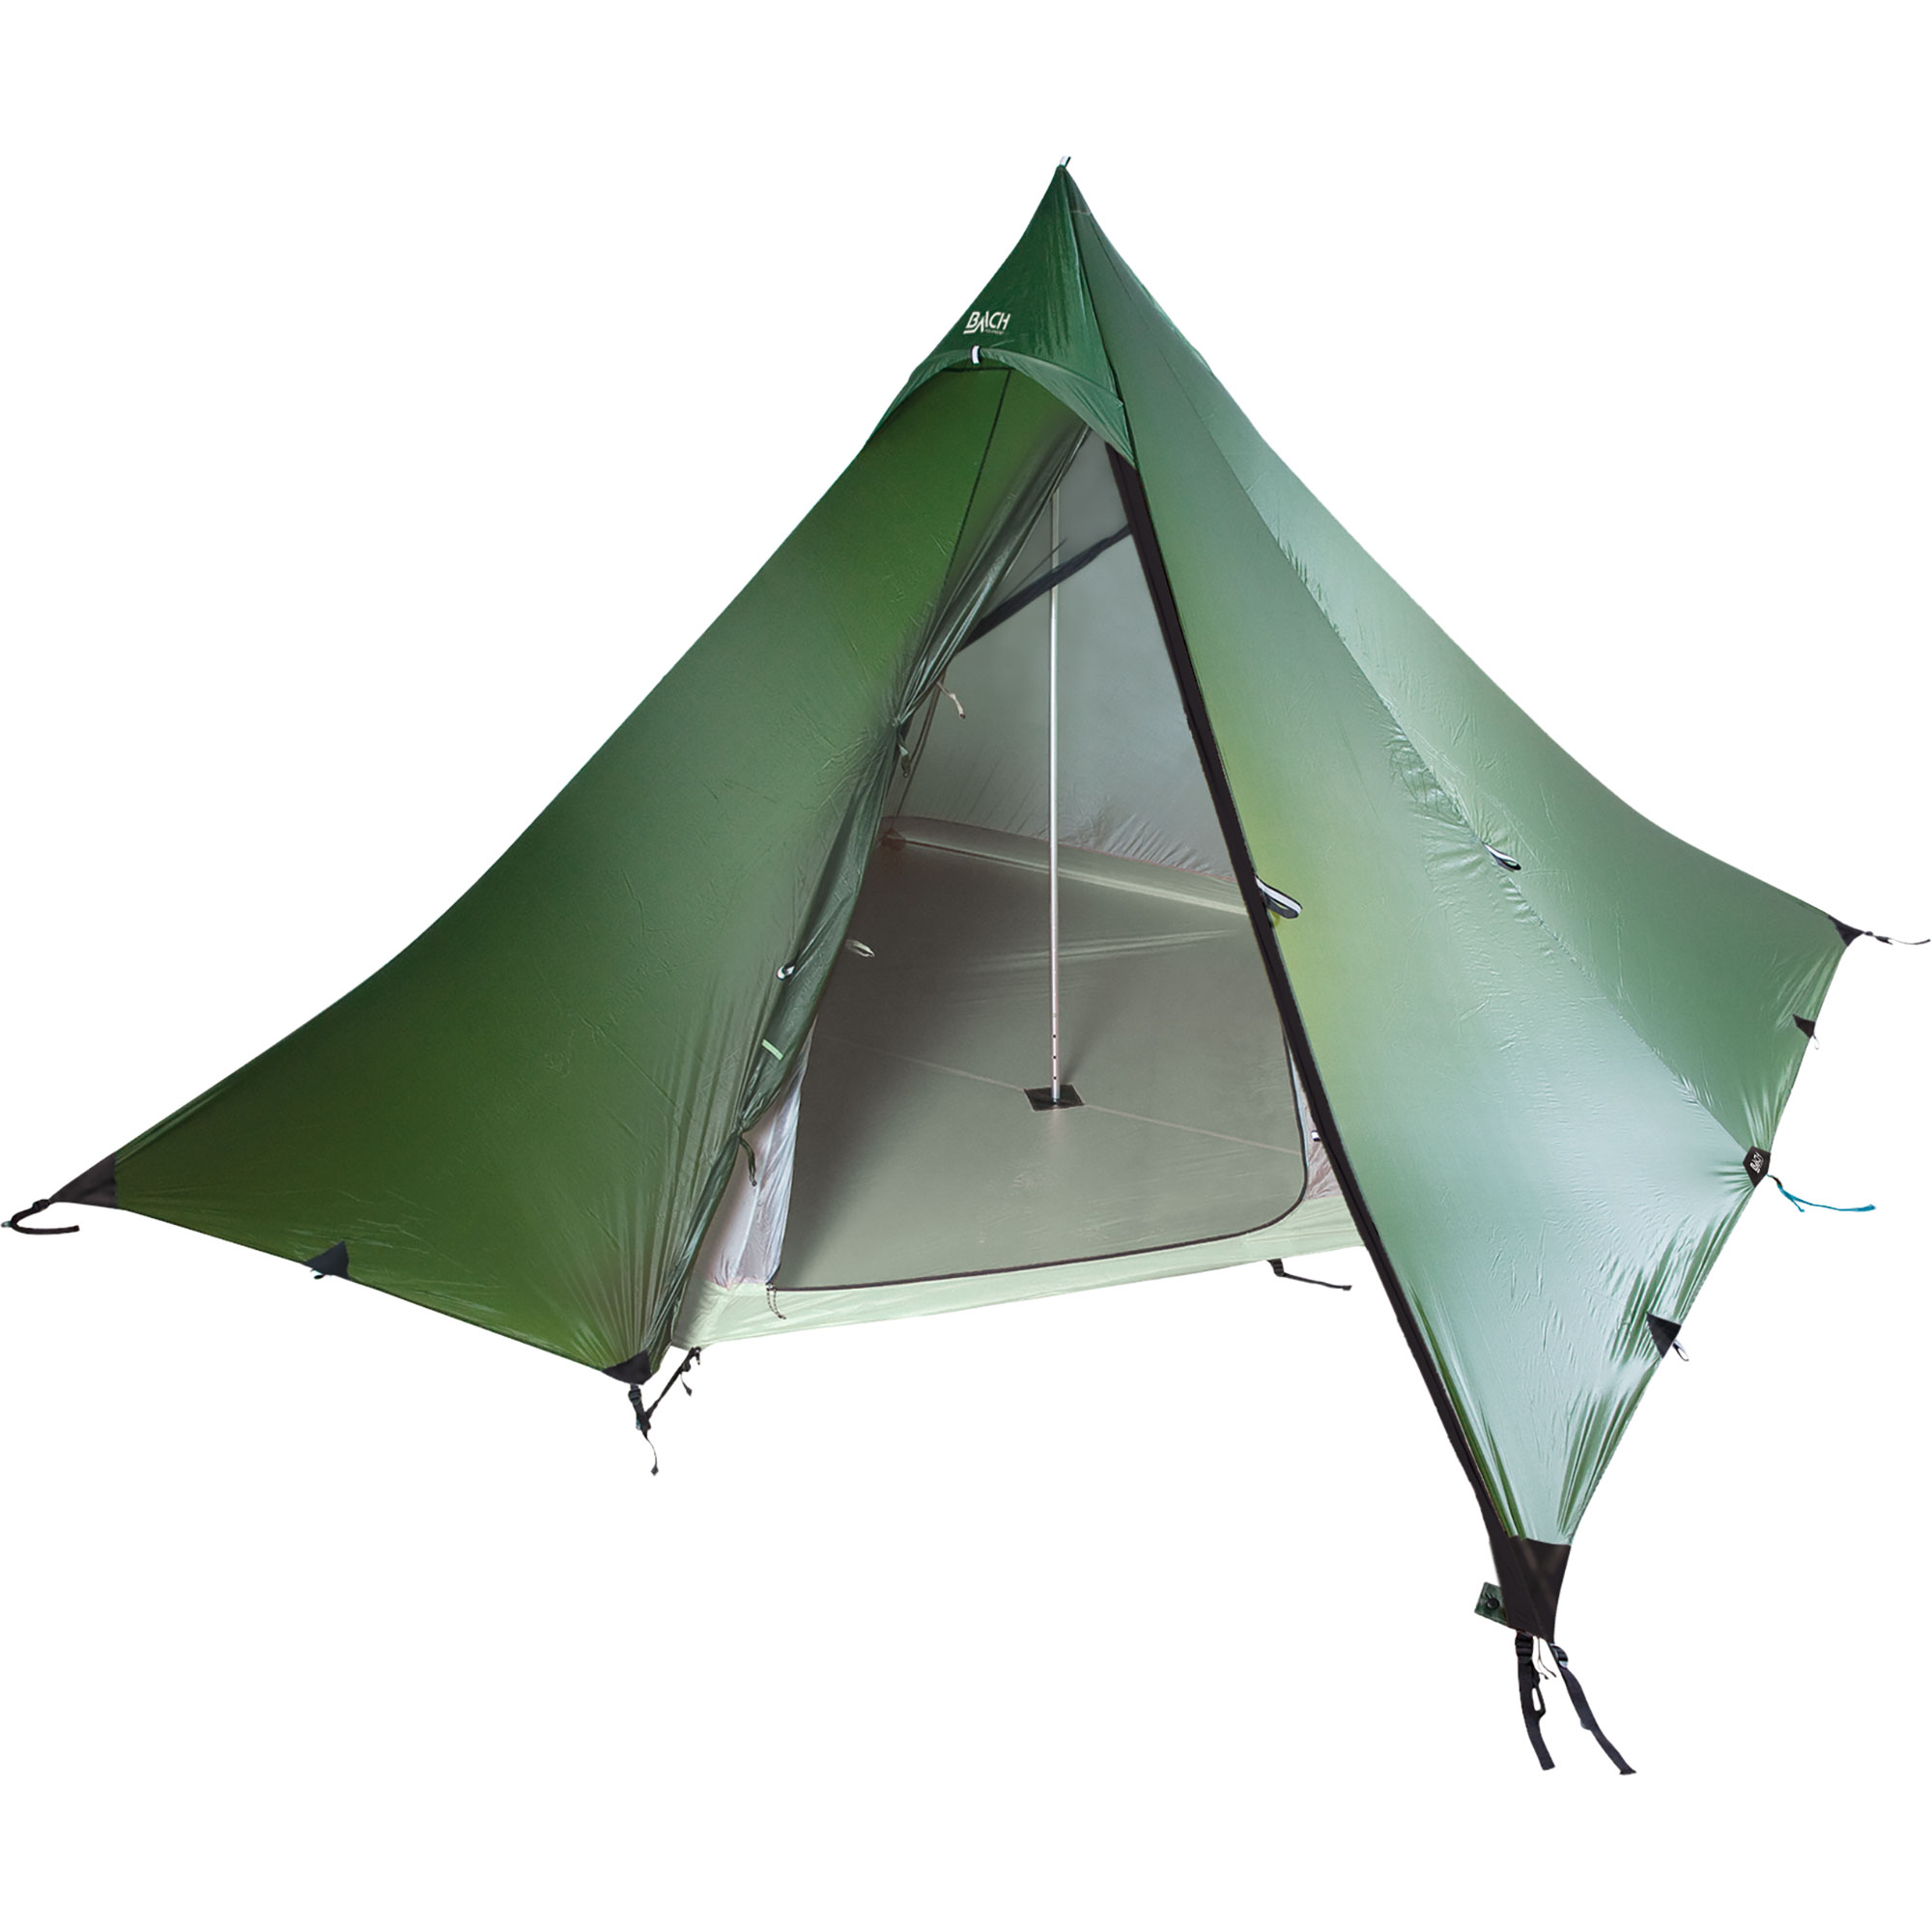 WickiUp 4 tipi-tent | Tenten | Overnachting | Outdoor Gouda